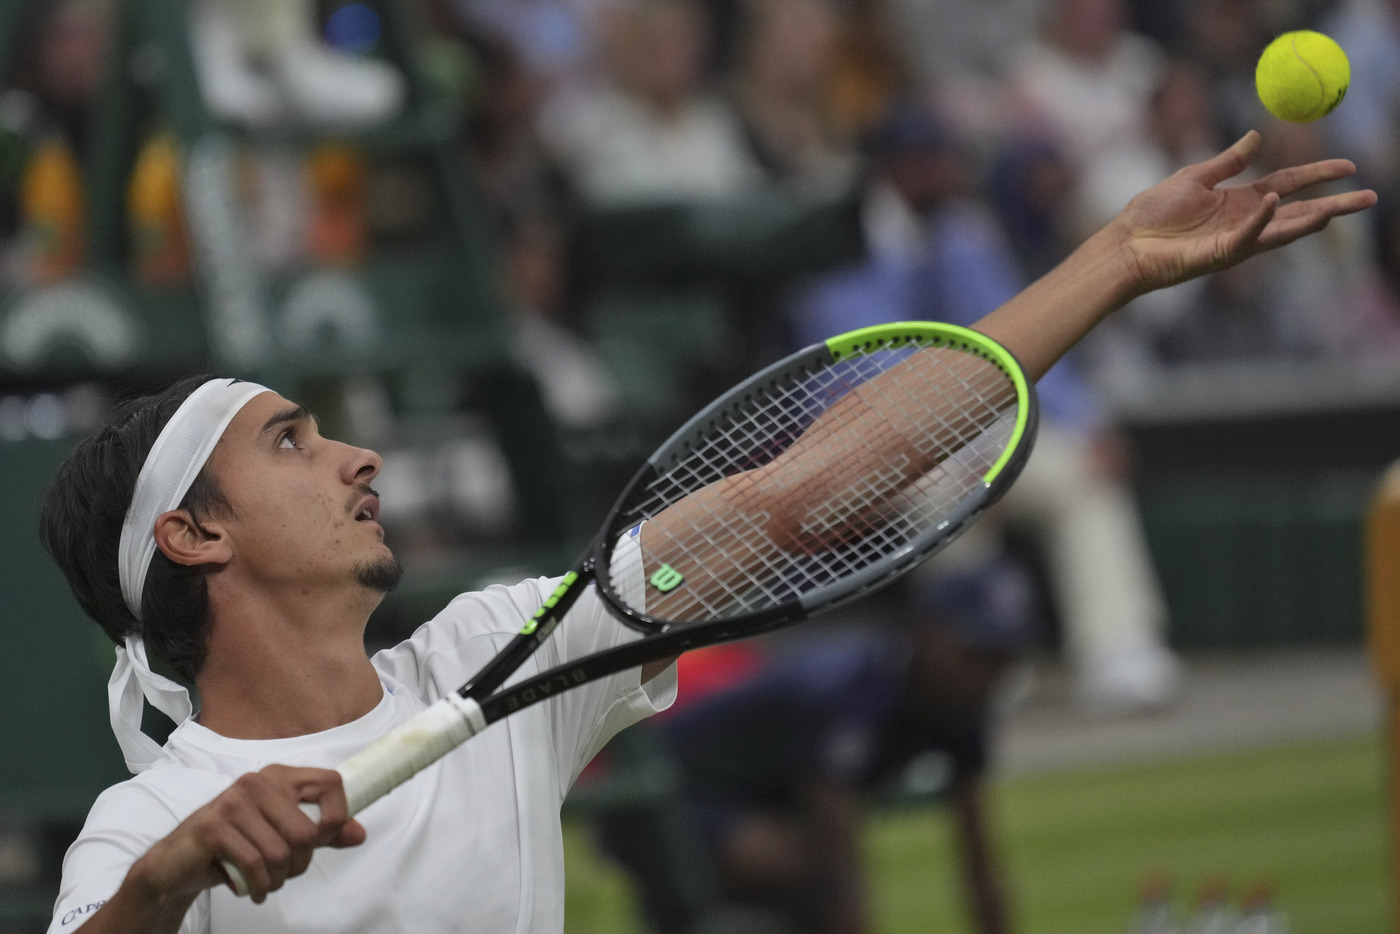 LIVE Sonego Gaston 7 6 2 1, Wimbledon 2022 in DIRETTA: l’azzurro piazza il break in avvio di secondo set